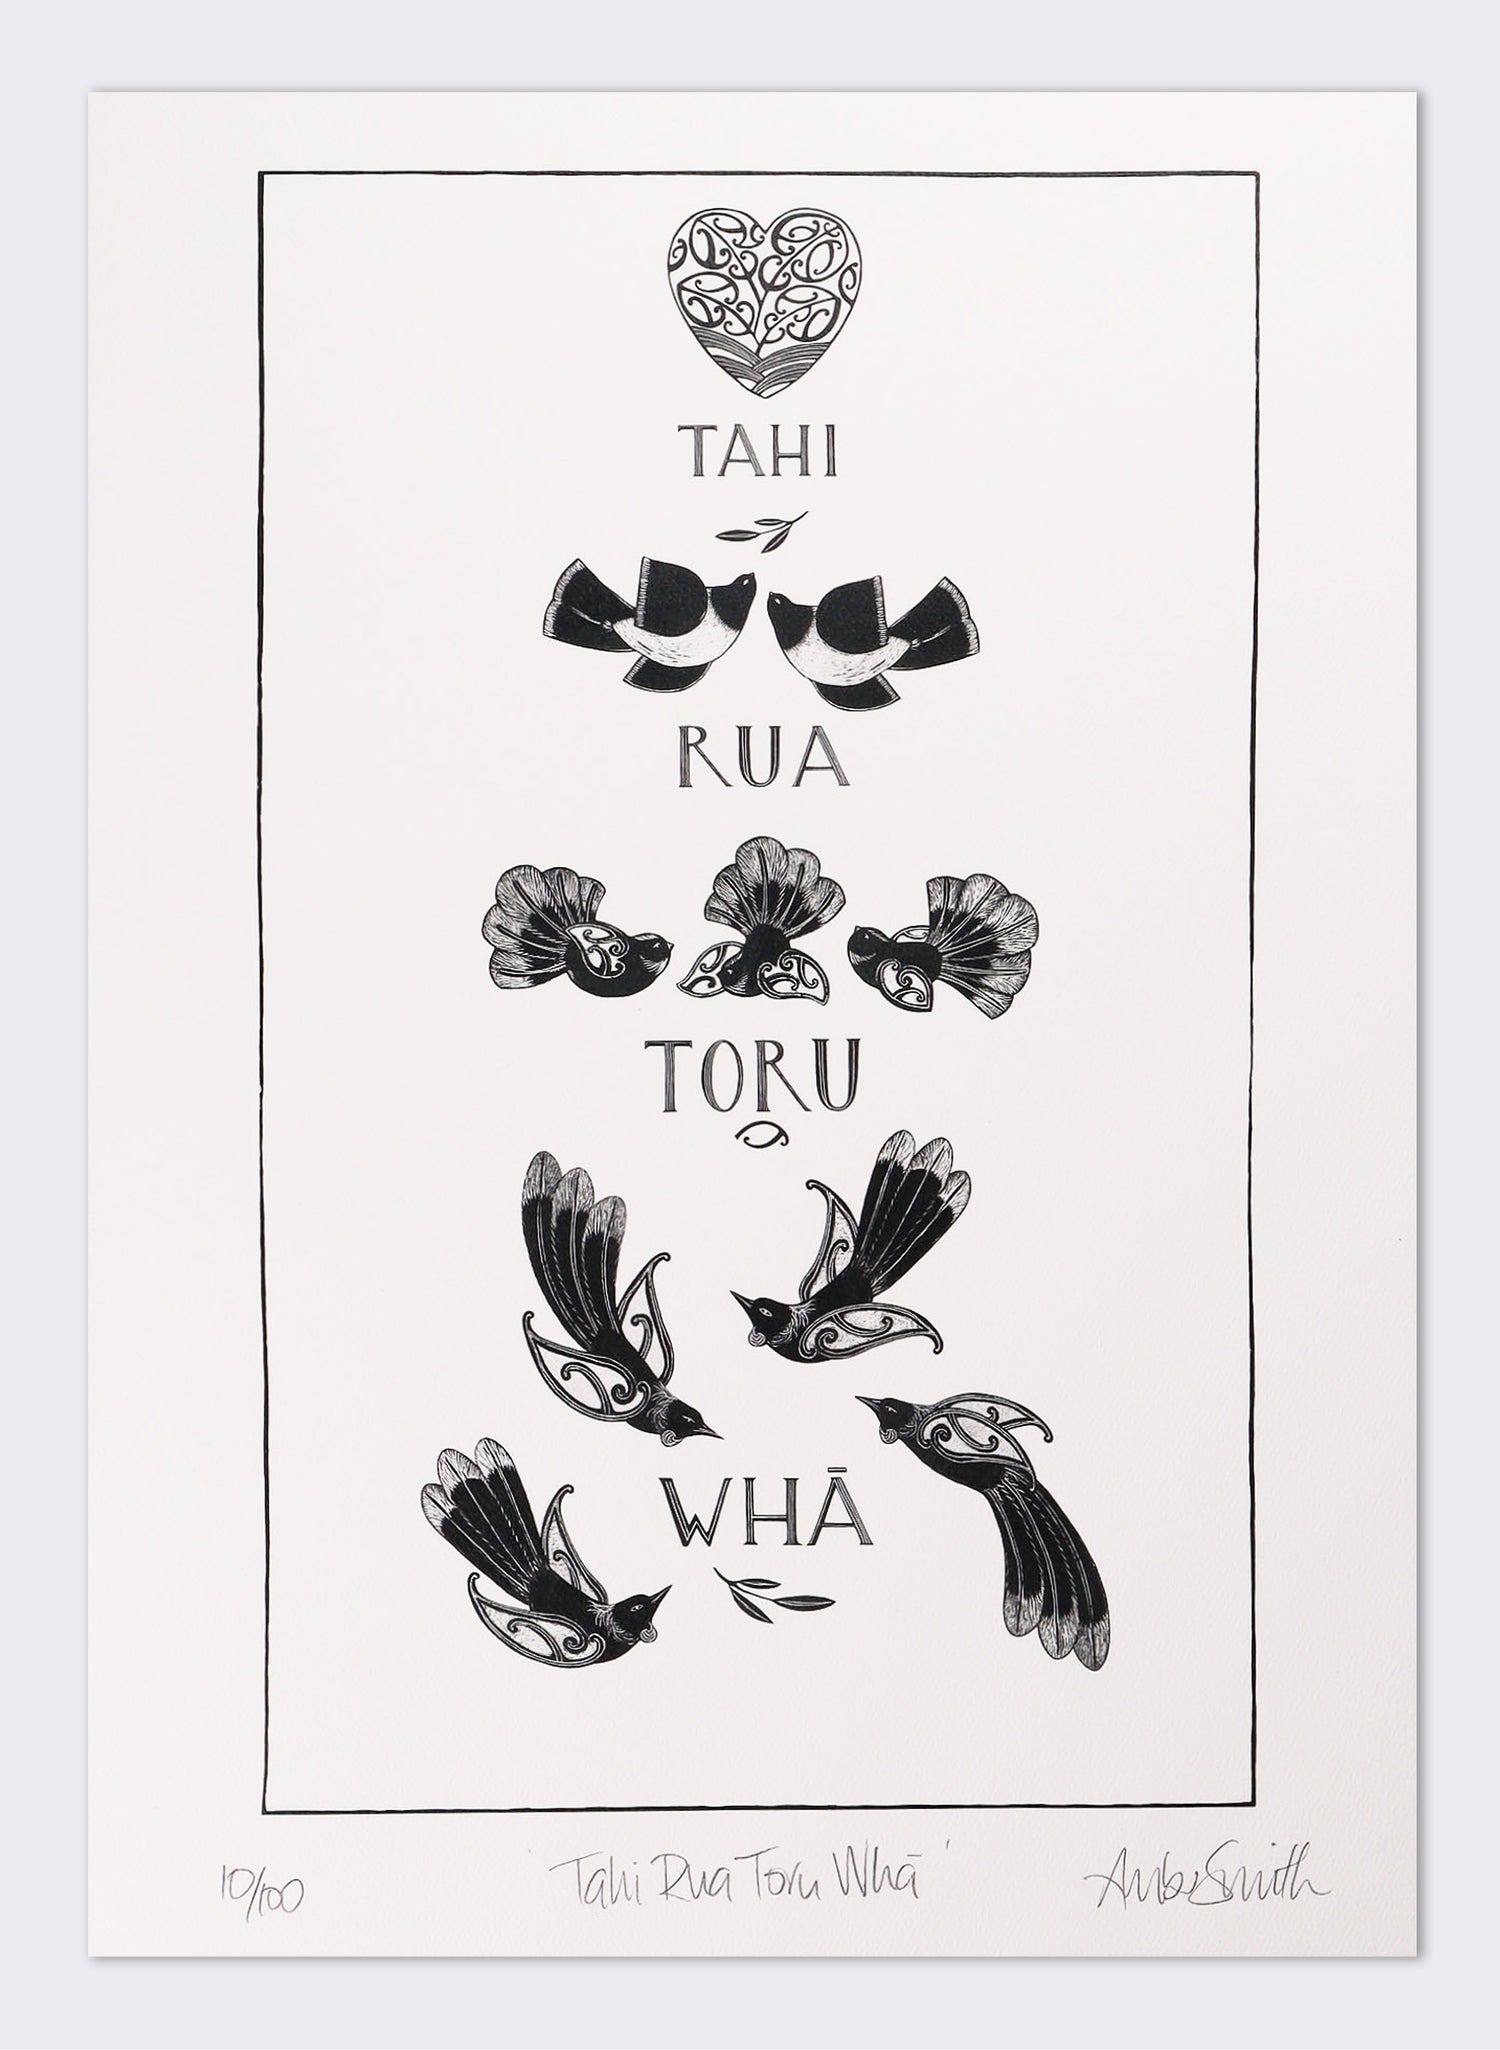 Tahi Rua Toru Whā - Giclée Print